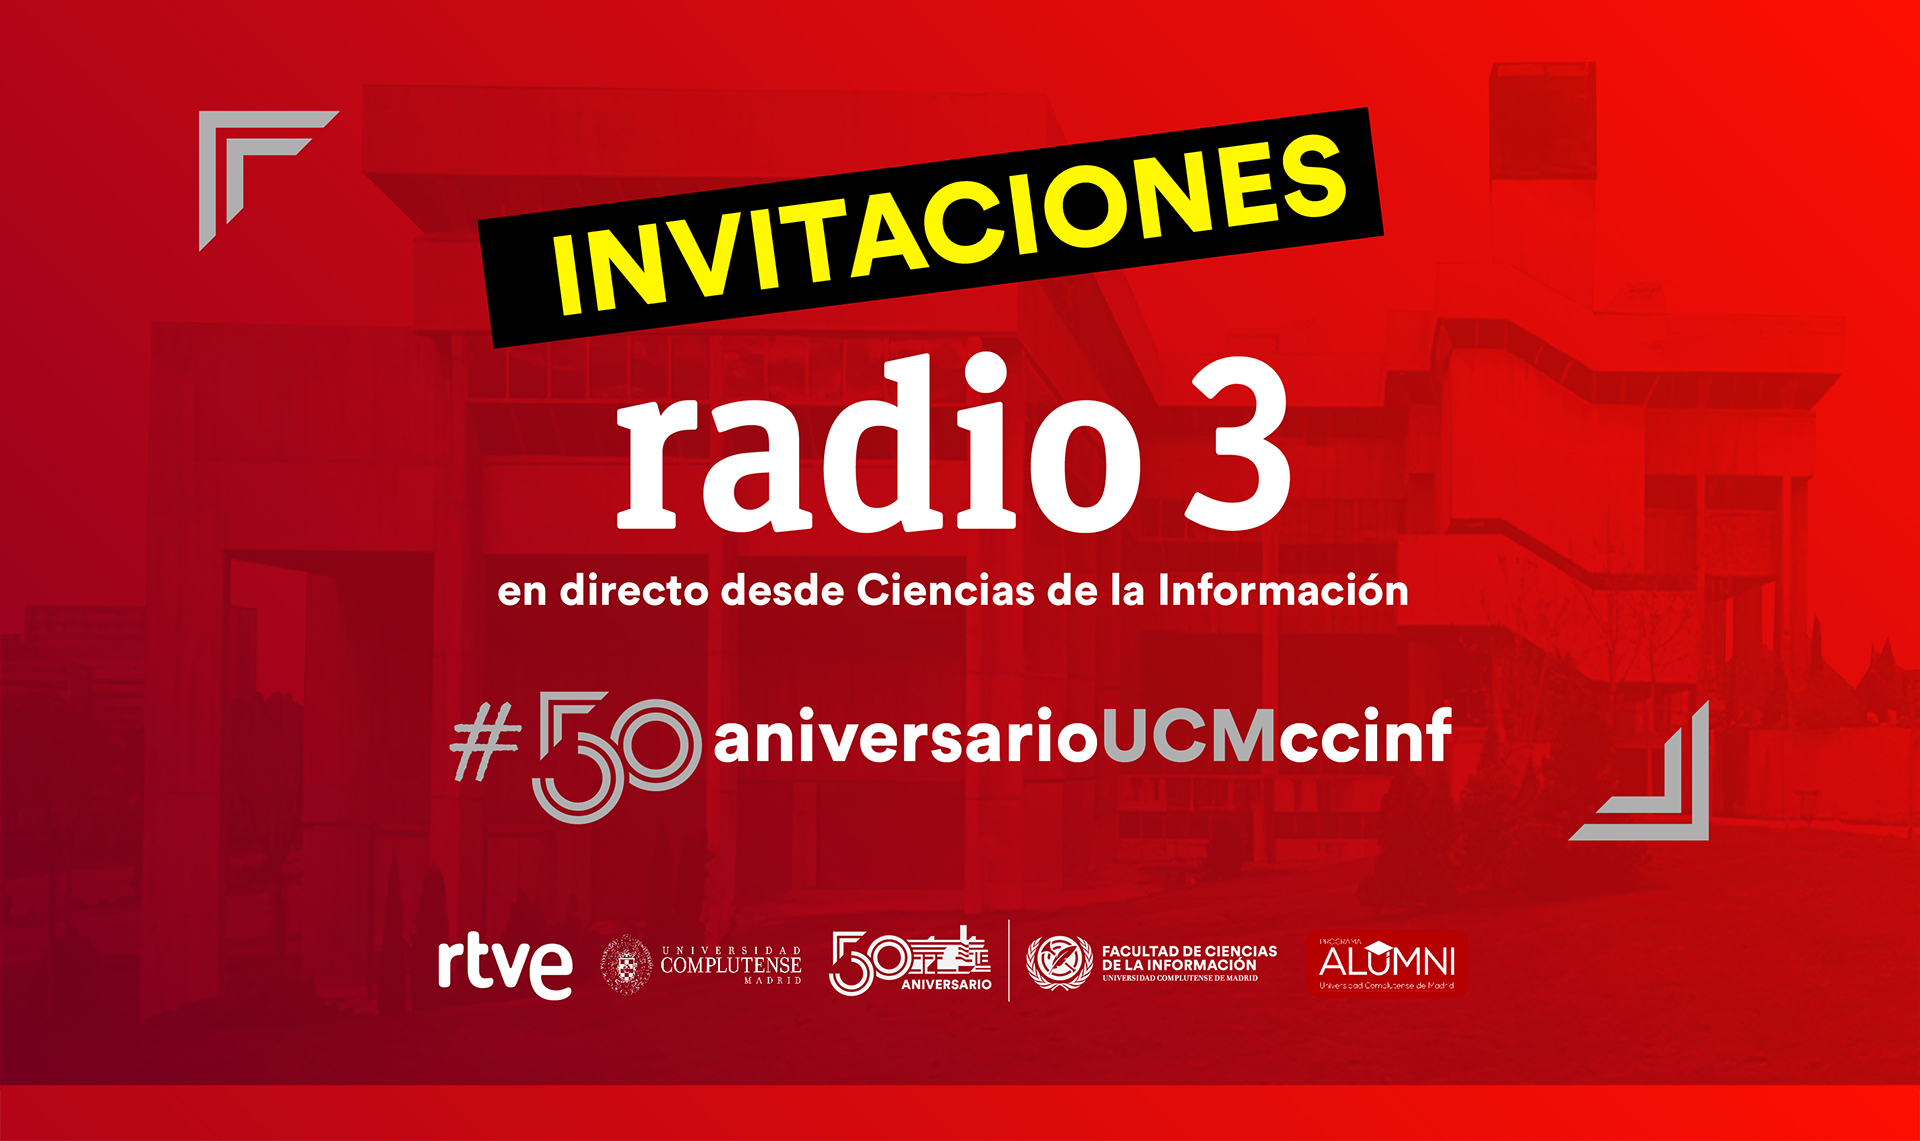 INVITACIONES PARA EL ESPECIAL DE RADIO 3 #50aniversarioUCMccinf - 1